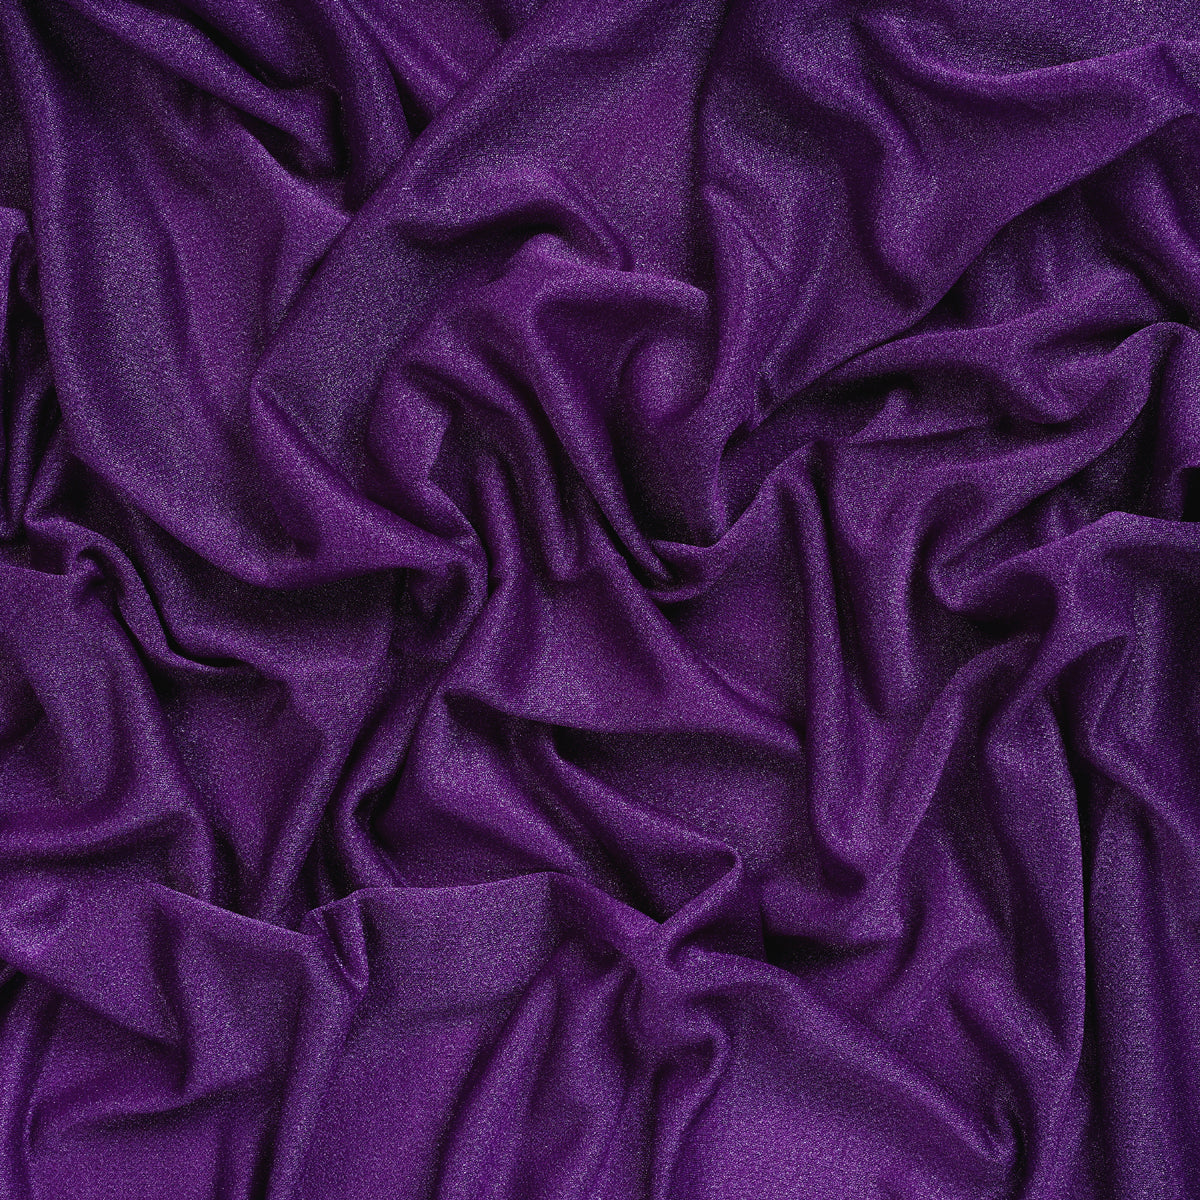 Purple,0114367e-6937-4a7f-a844-2a0a8f3cf0d0